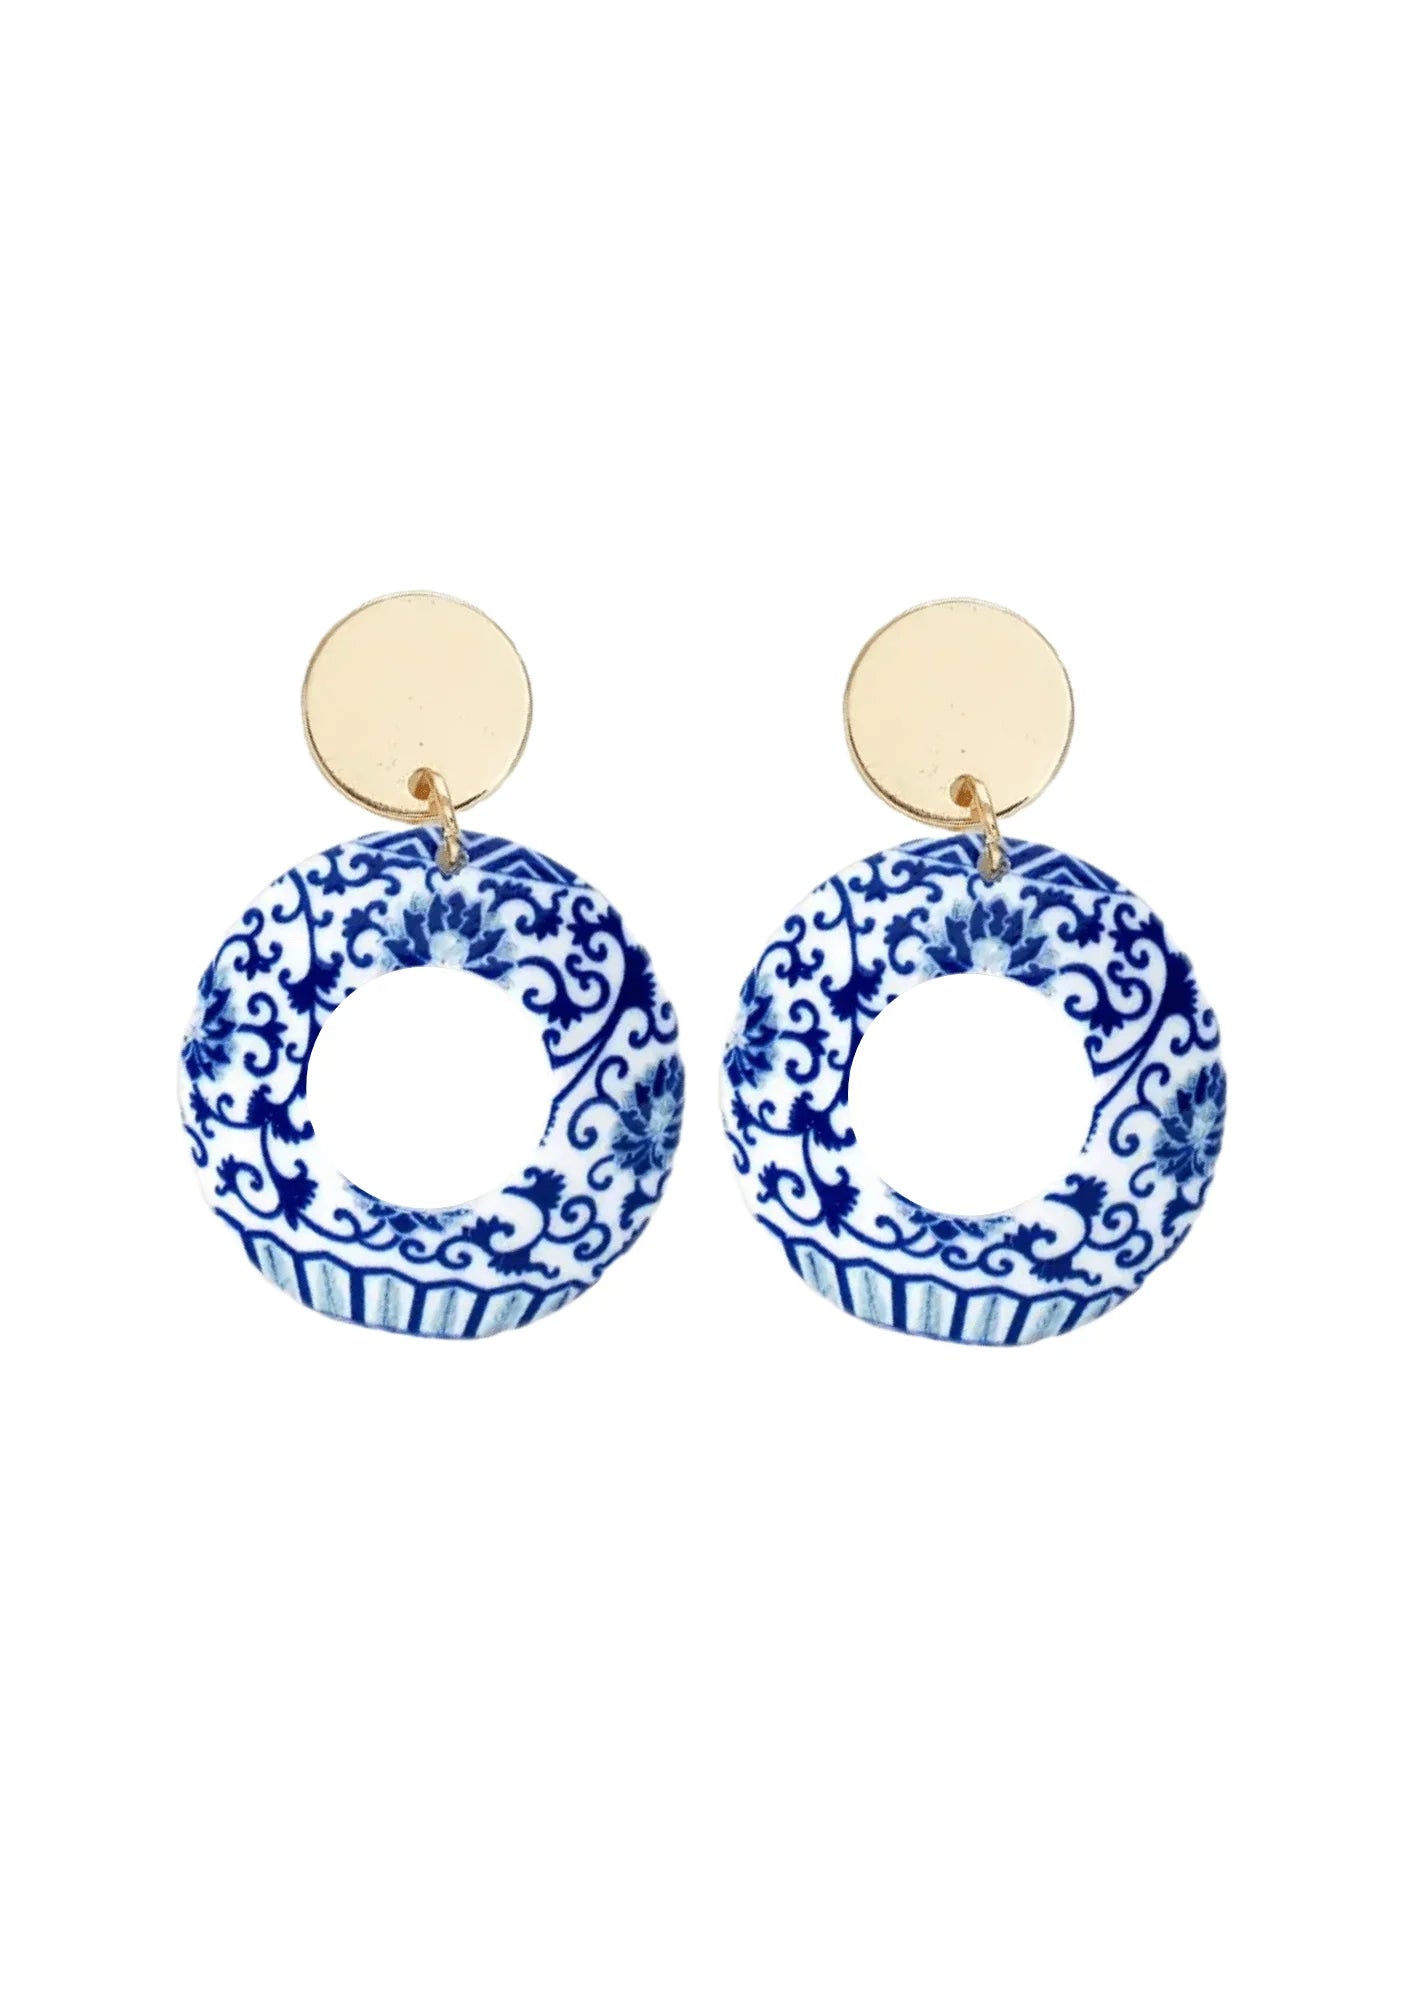 Blaue Ohrringe im chinesischen Acryl -Stil